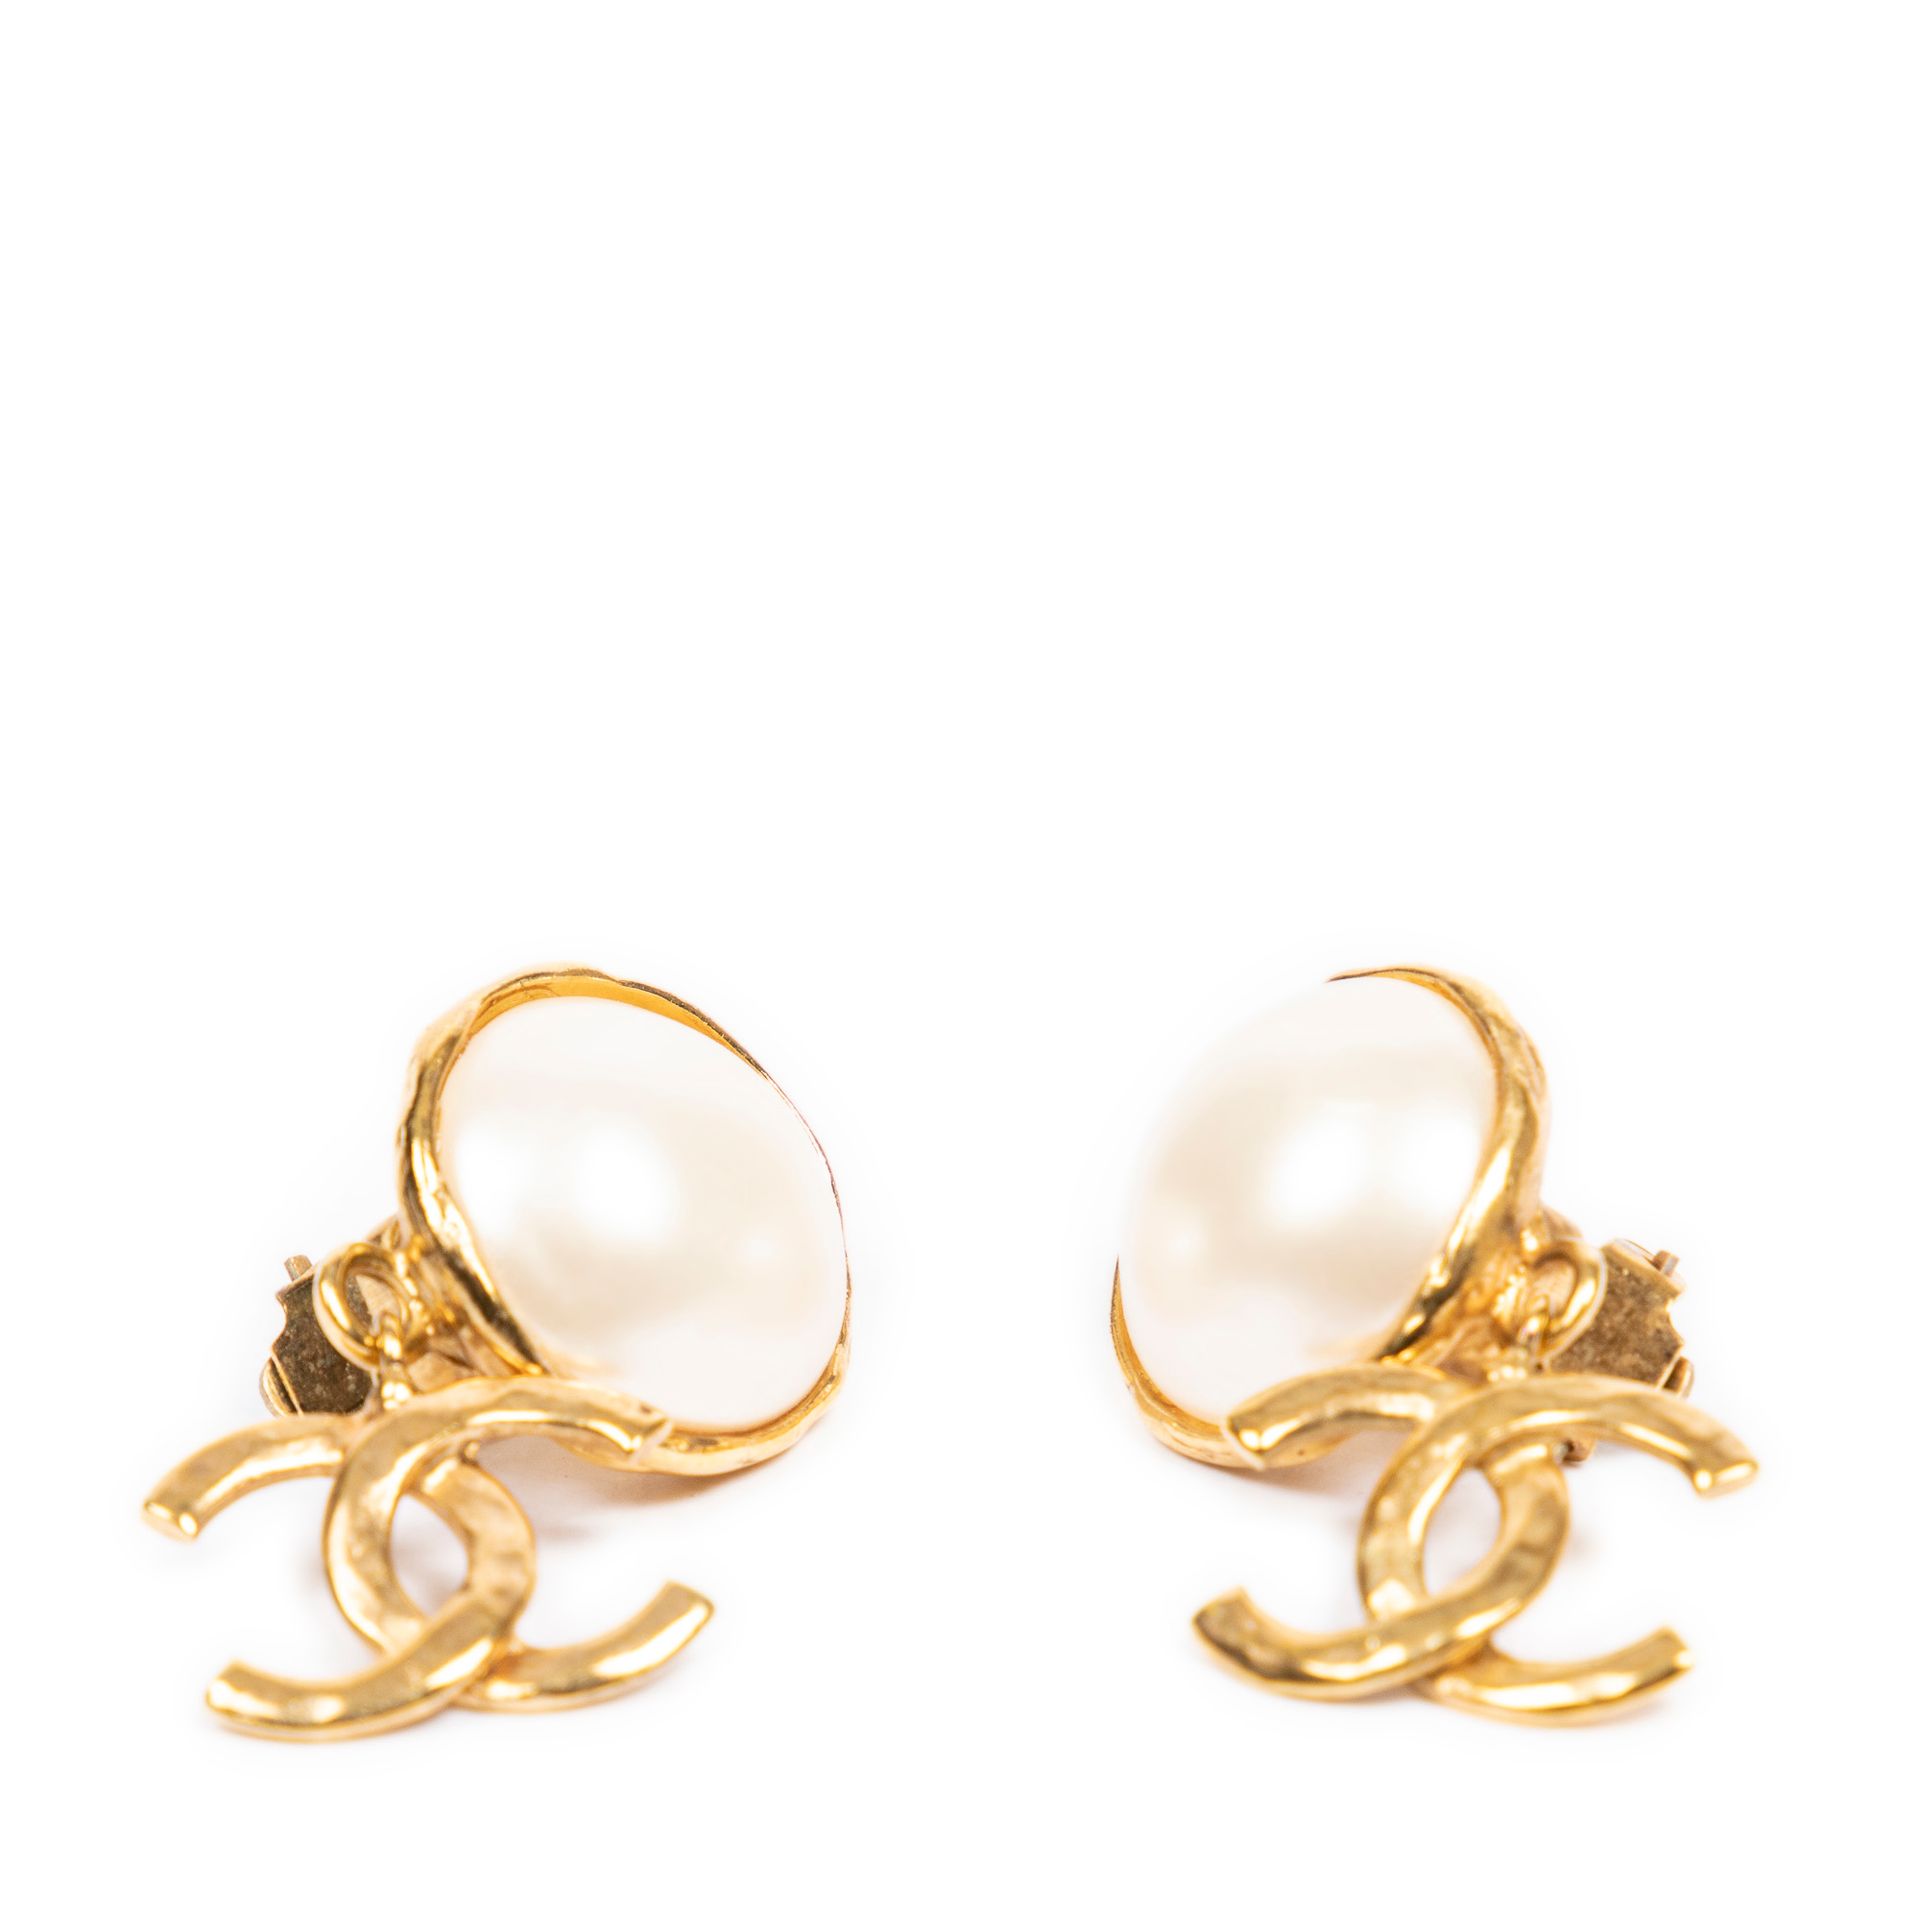 Chanel 香奈儿 - 一对鎏金金属耳夹，每个耳夹上都有一颗封闭式的珍珠装饰，上面有香奈儿的标志。有签名和编号。尺寸：4厘米